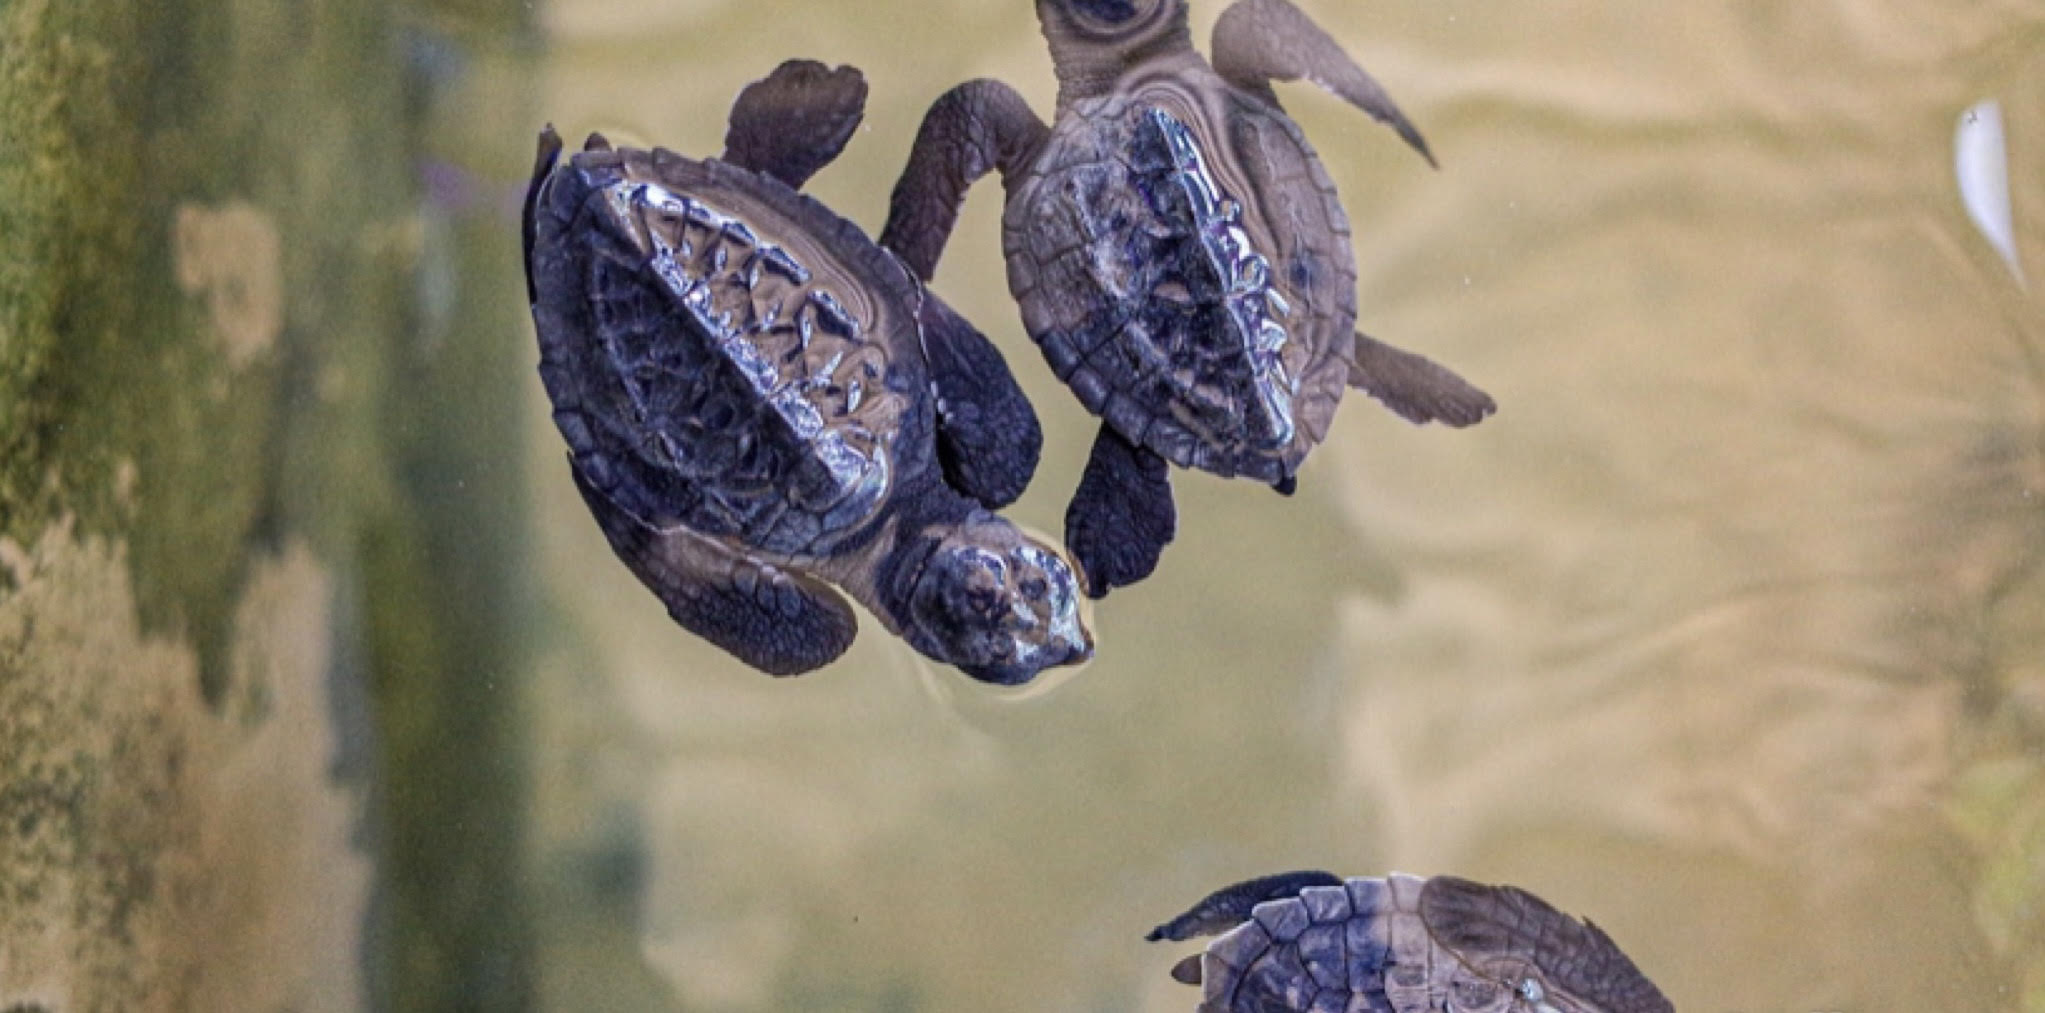 In Sardegna sono nate decine di tartarughe Caretta caretta